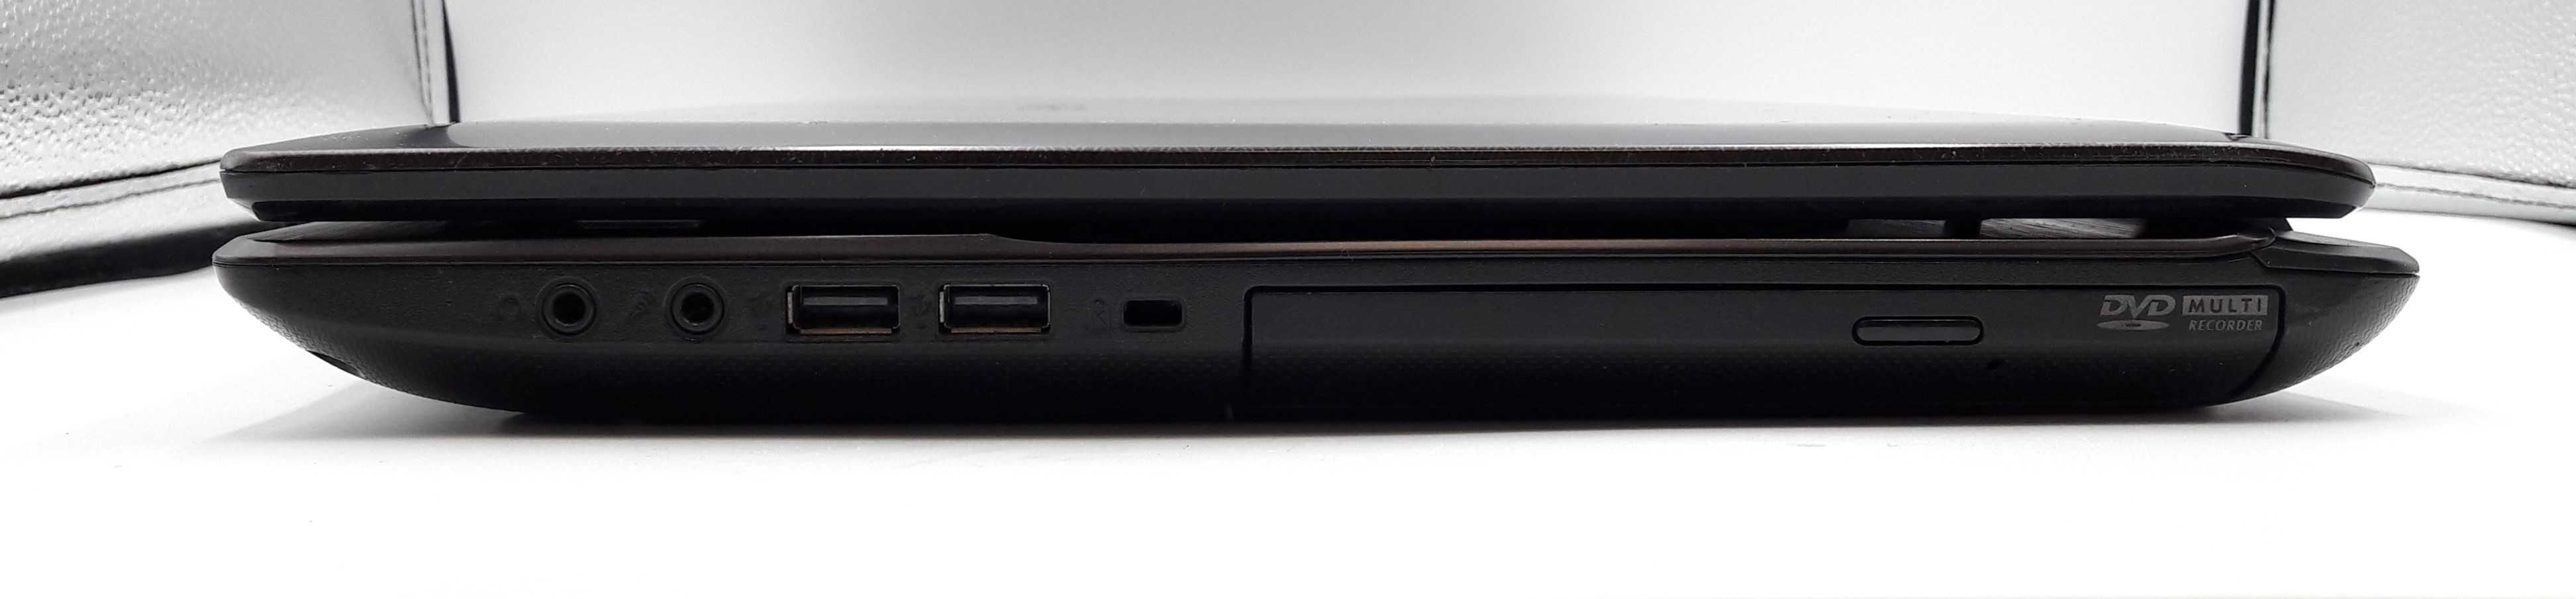 Laptop ASUS K73T 4GB Brak dysku Używany